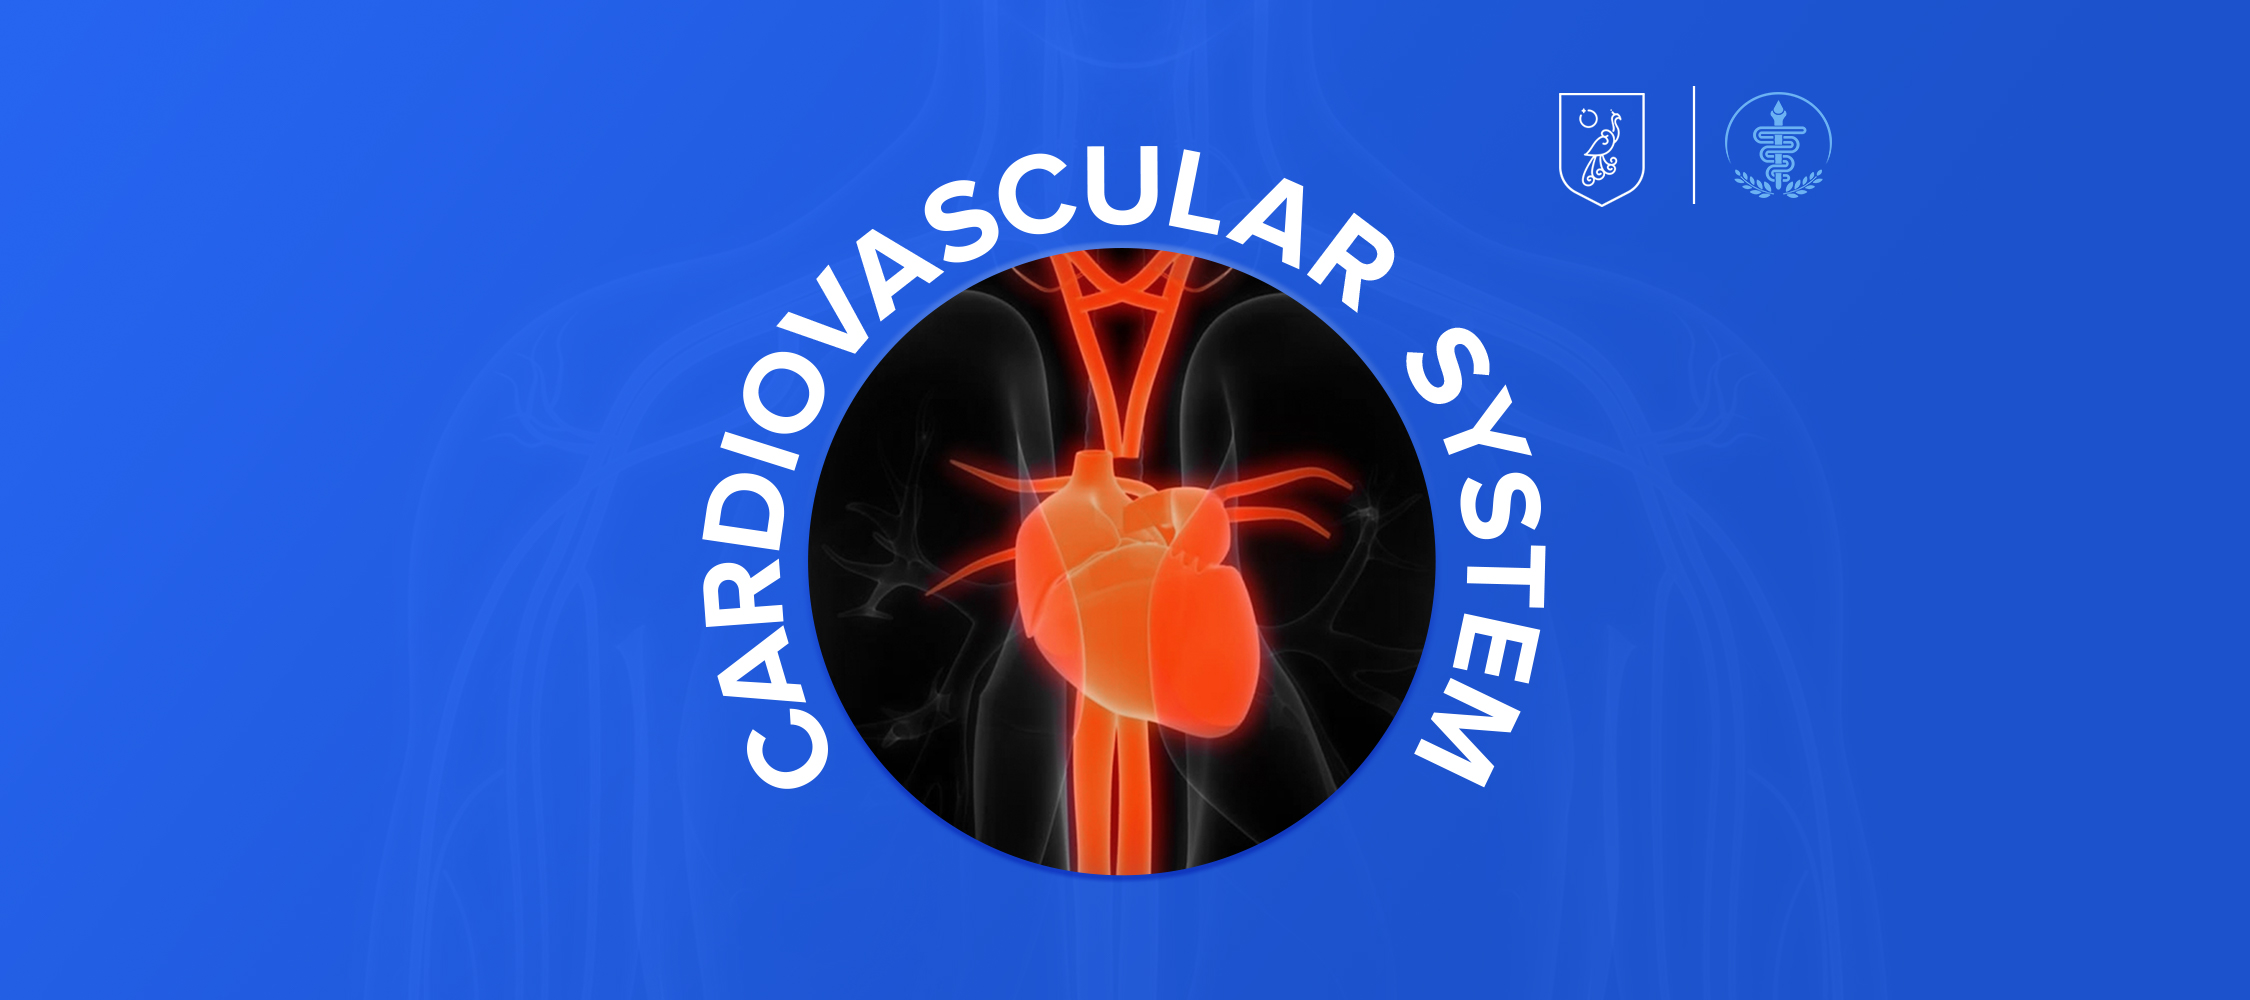 Cardiovascular System MH001